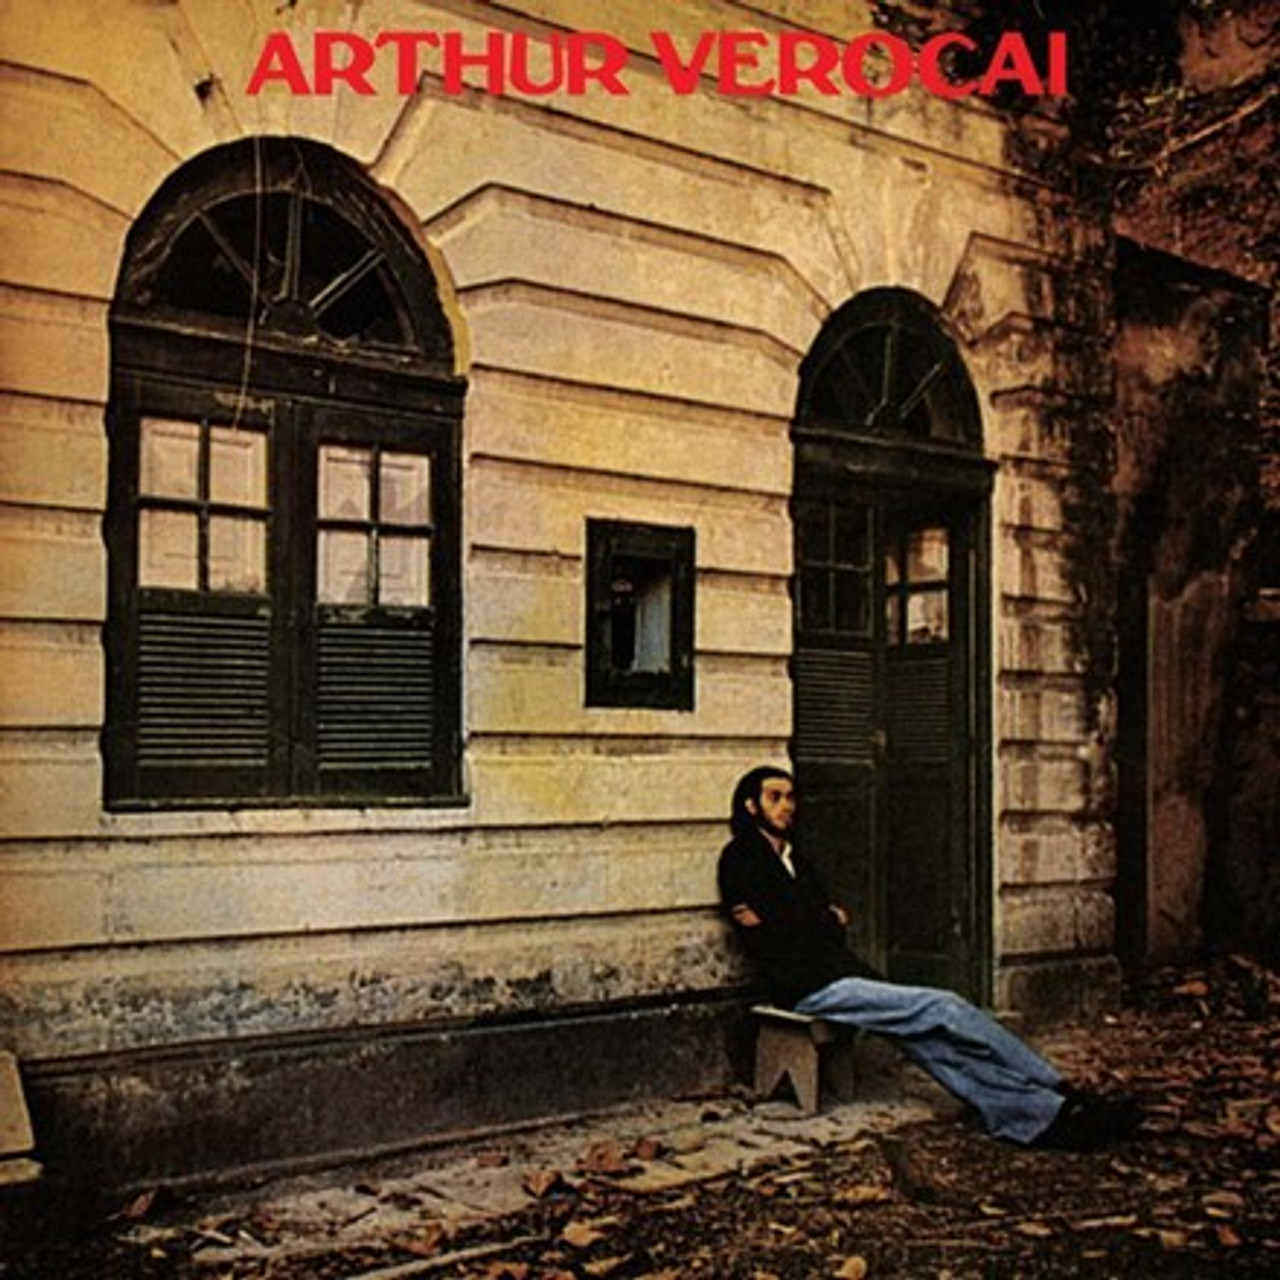 Arthur Verocai, Arthur Verocai